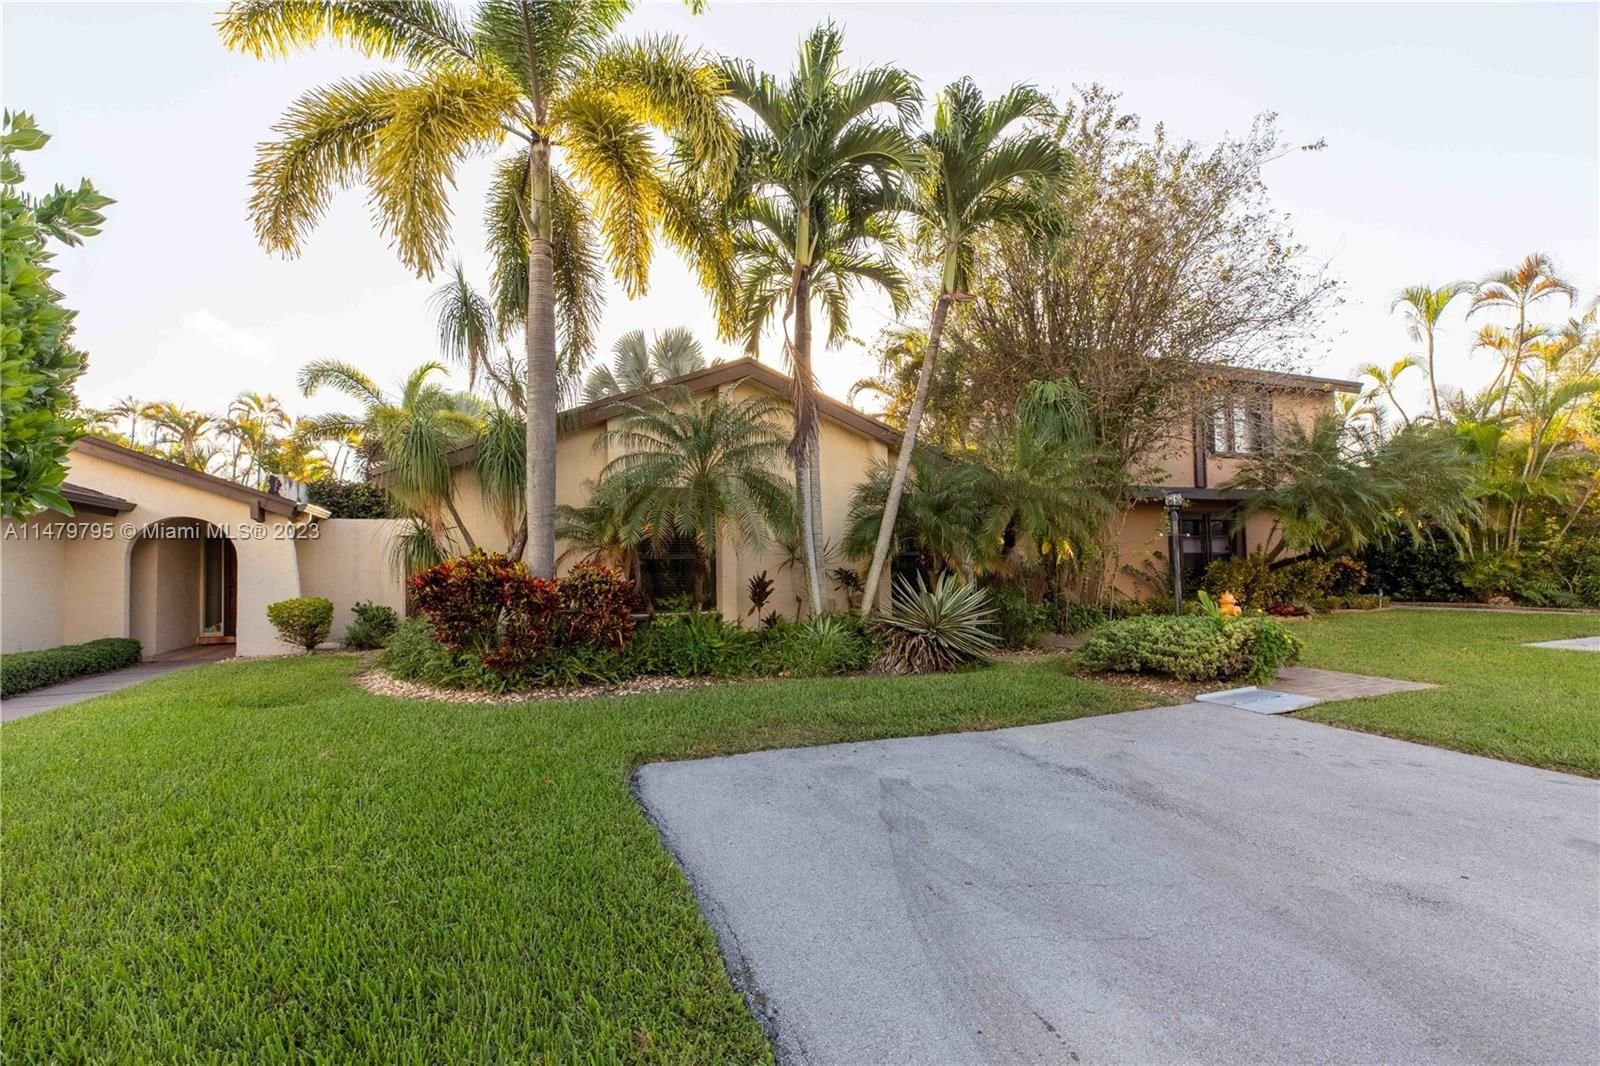 Real estate property located at 13115 90th Ct, Miami-Dade County, BRIAR LAKE, Miami, FL